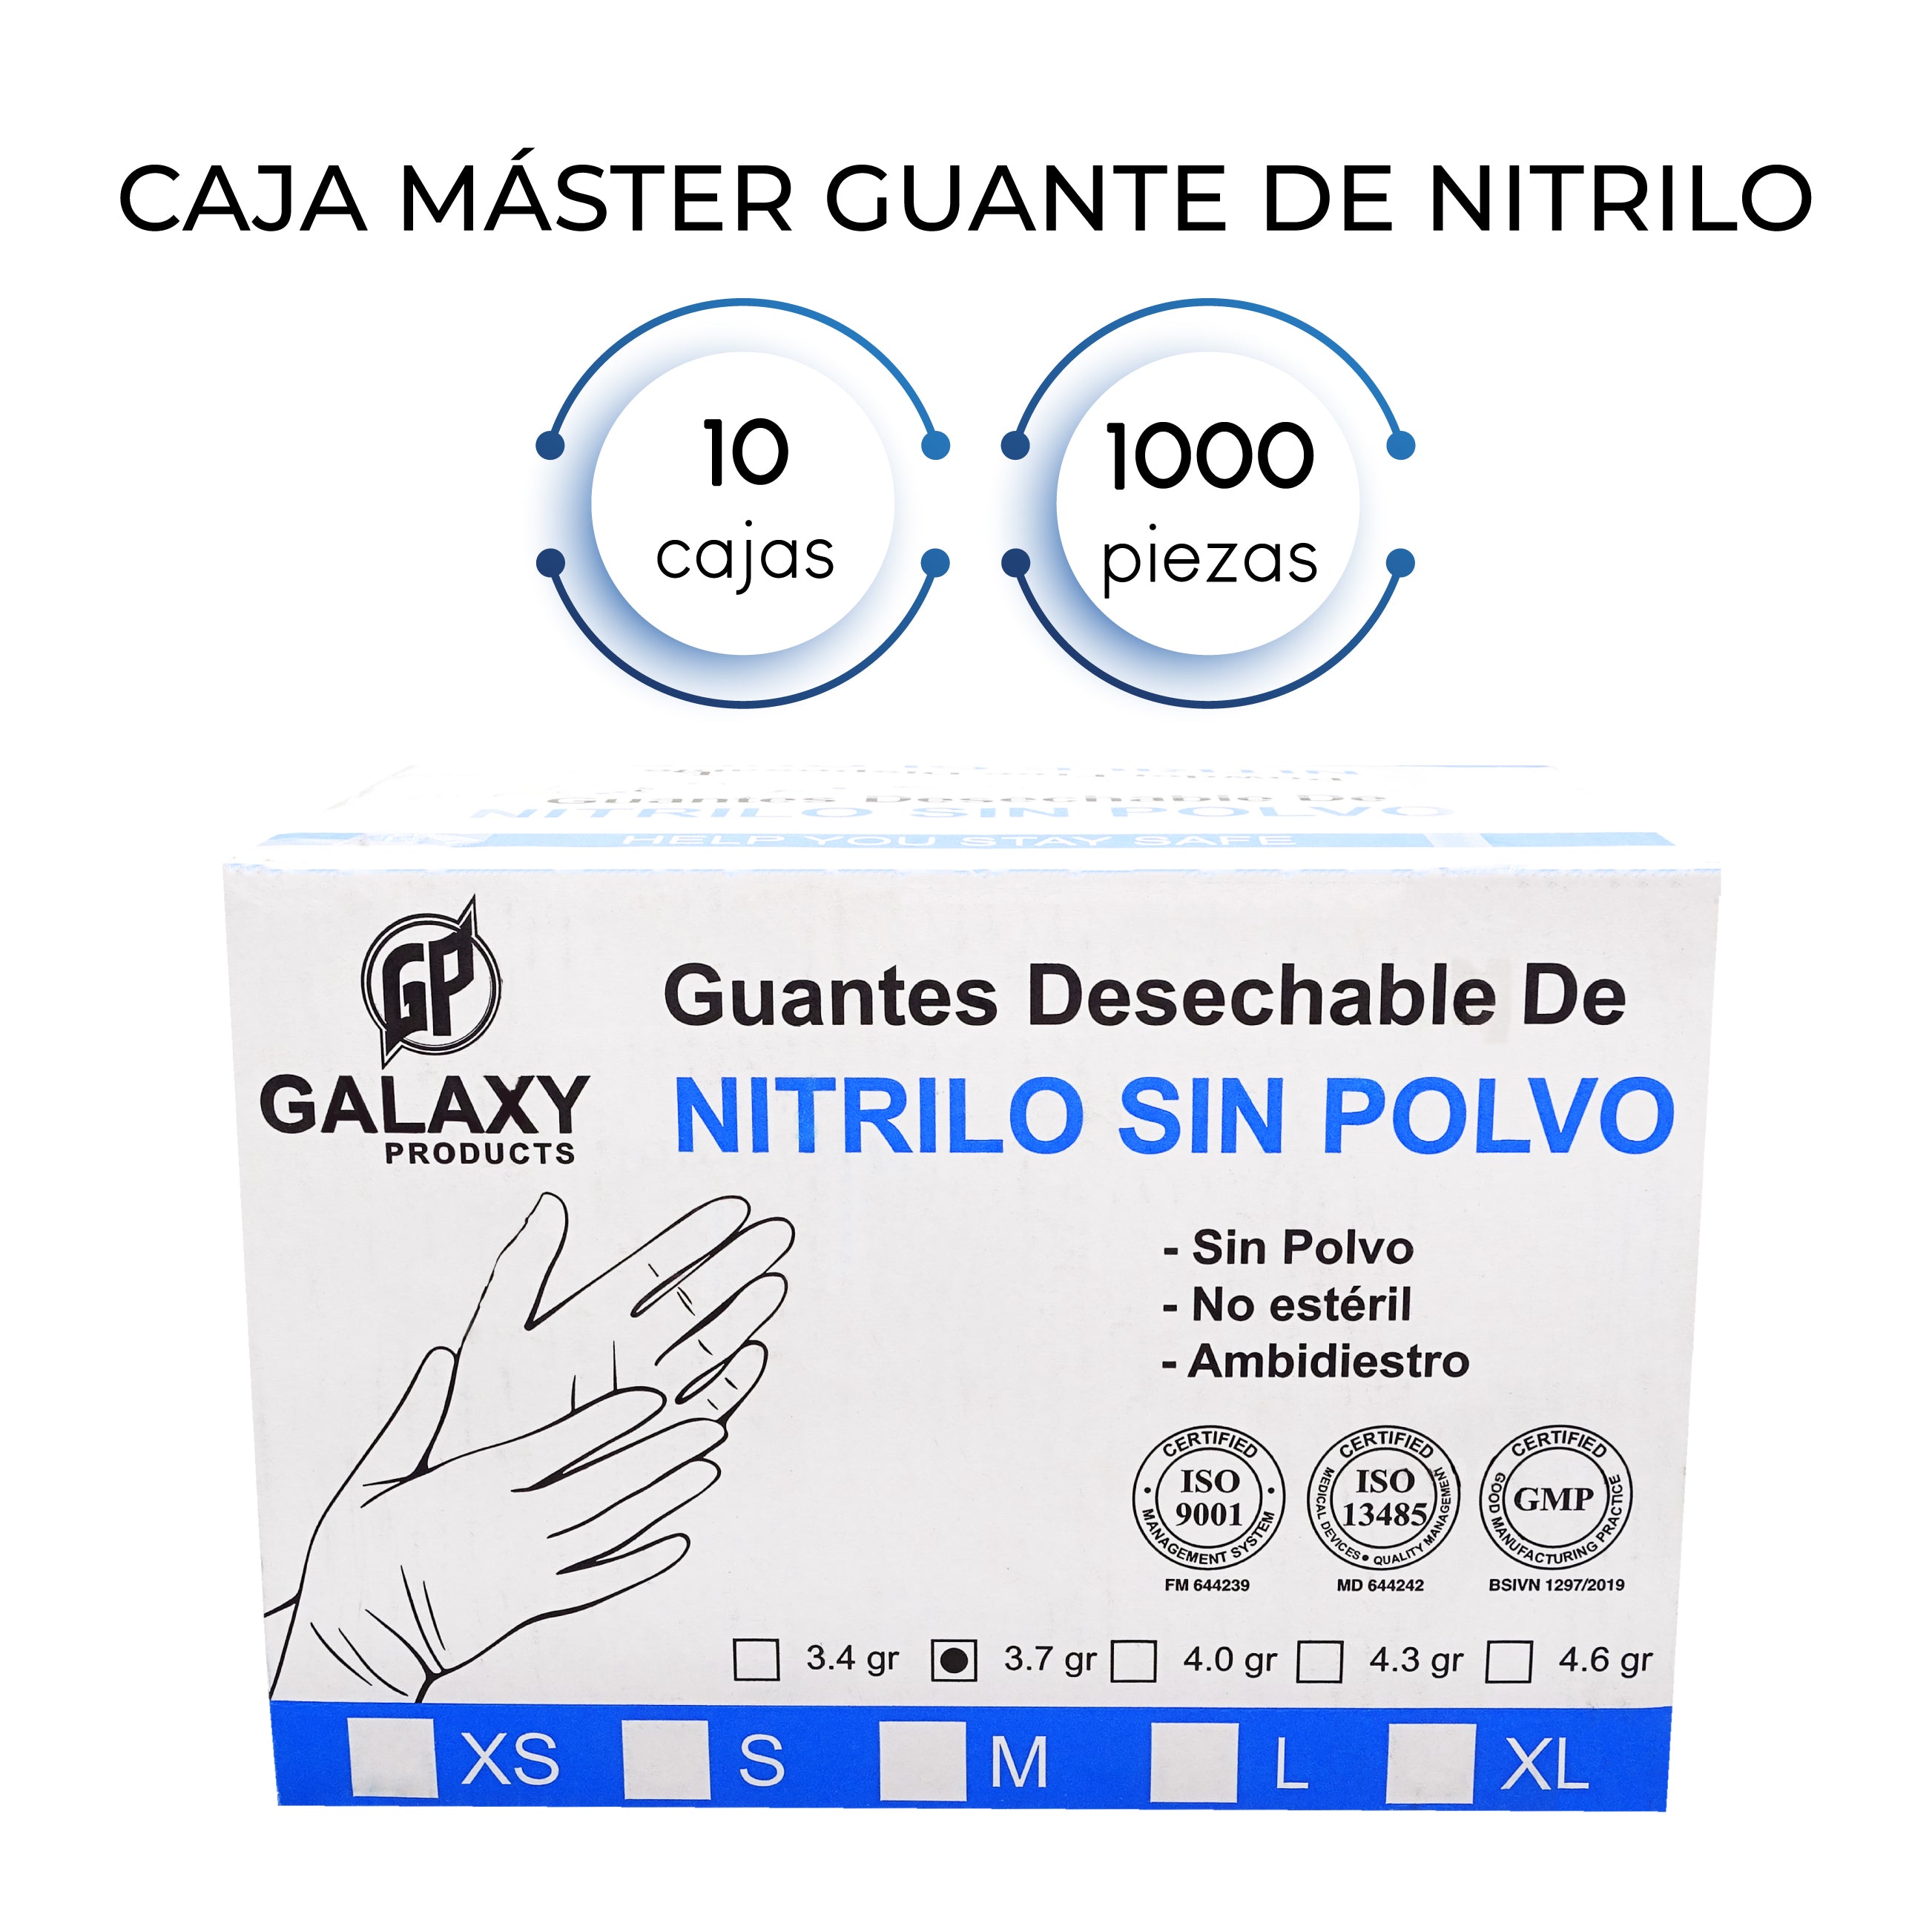 Caja Master Guante de Nitrilo (1000 Guantes)